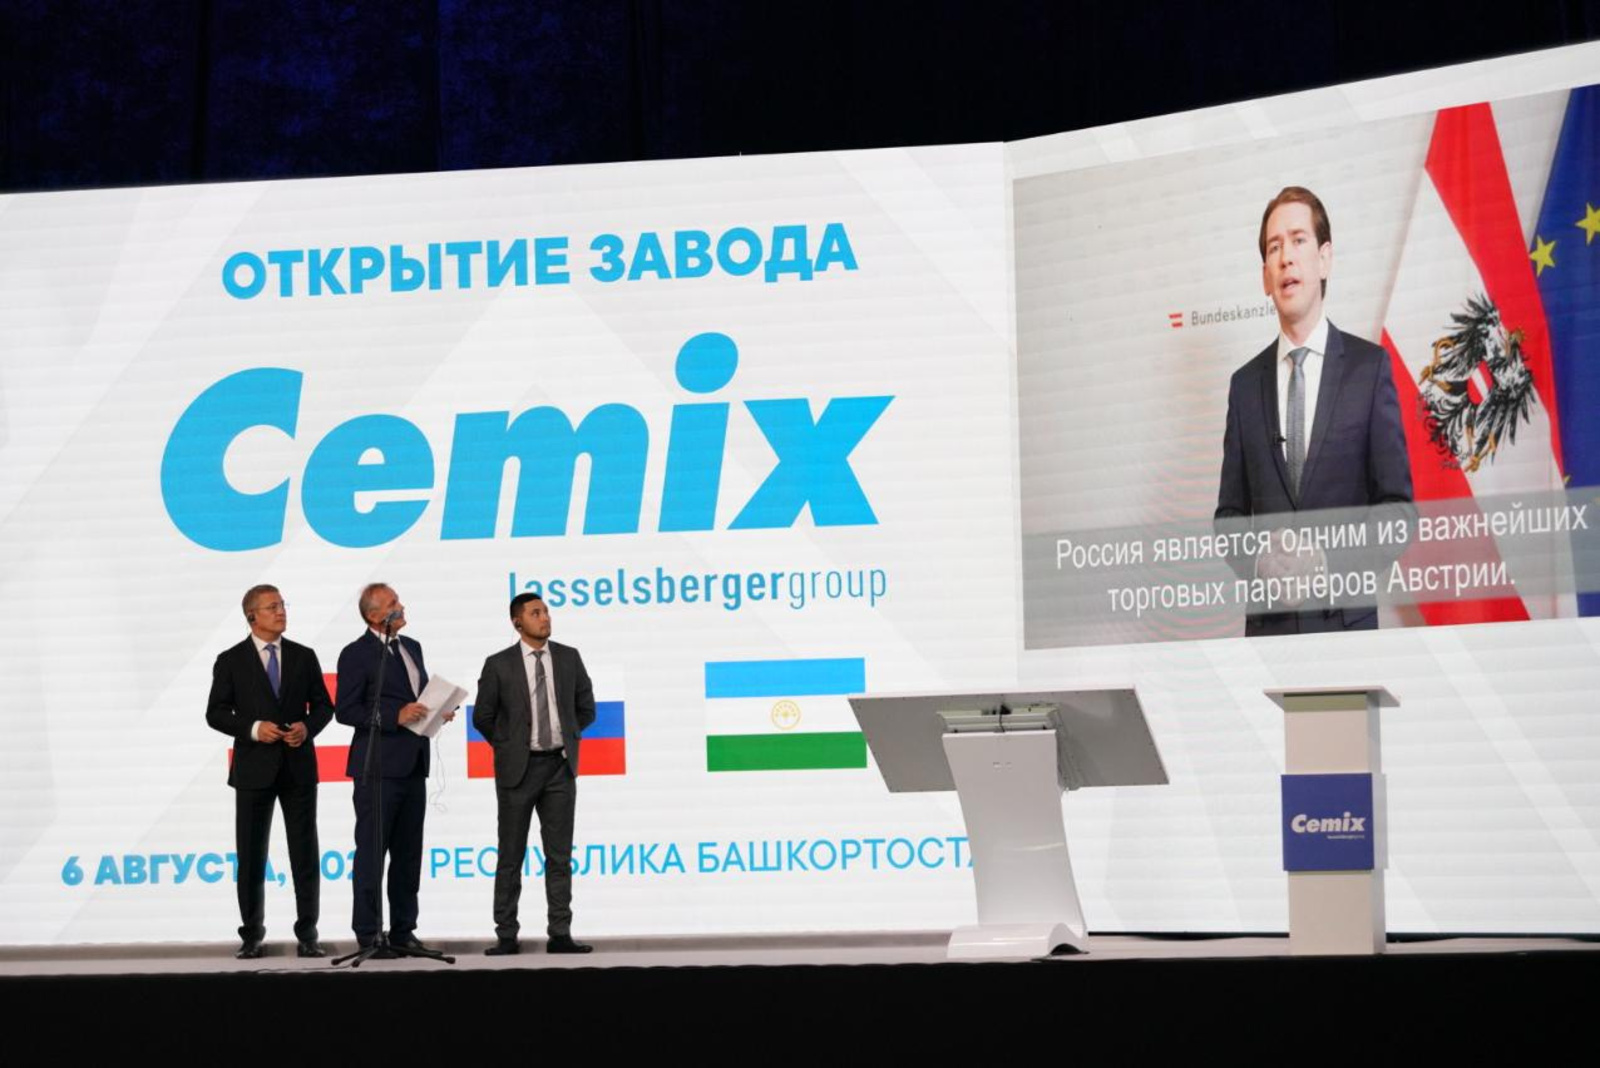 Канцлер Австрии назвал запуск завода Cemix сигналом оздоровления экономики